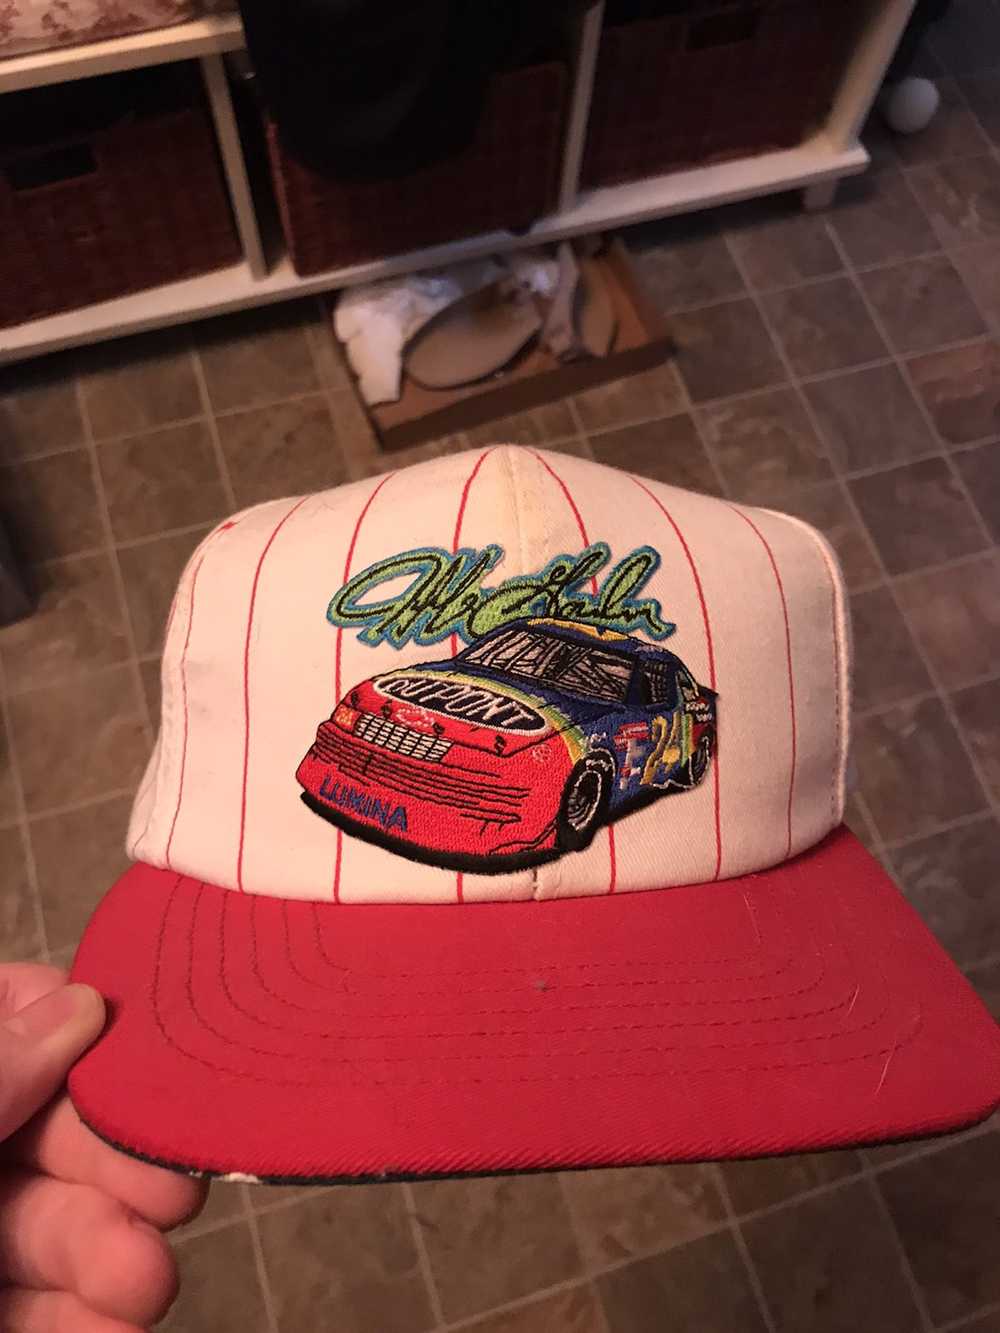 NASCAR × Vintage Vintage nascar Jeff Gordon hat - image 1